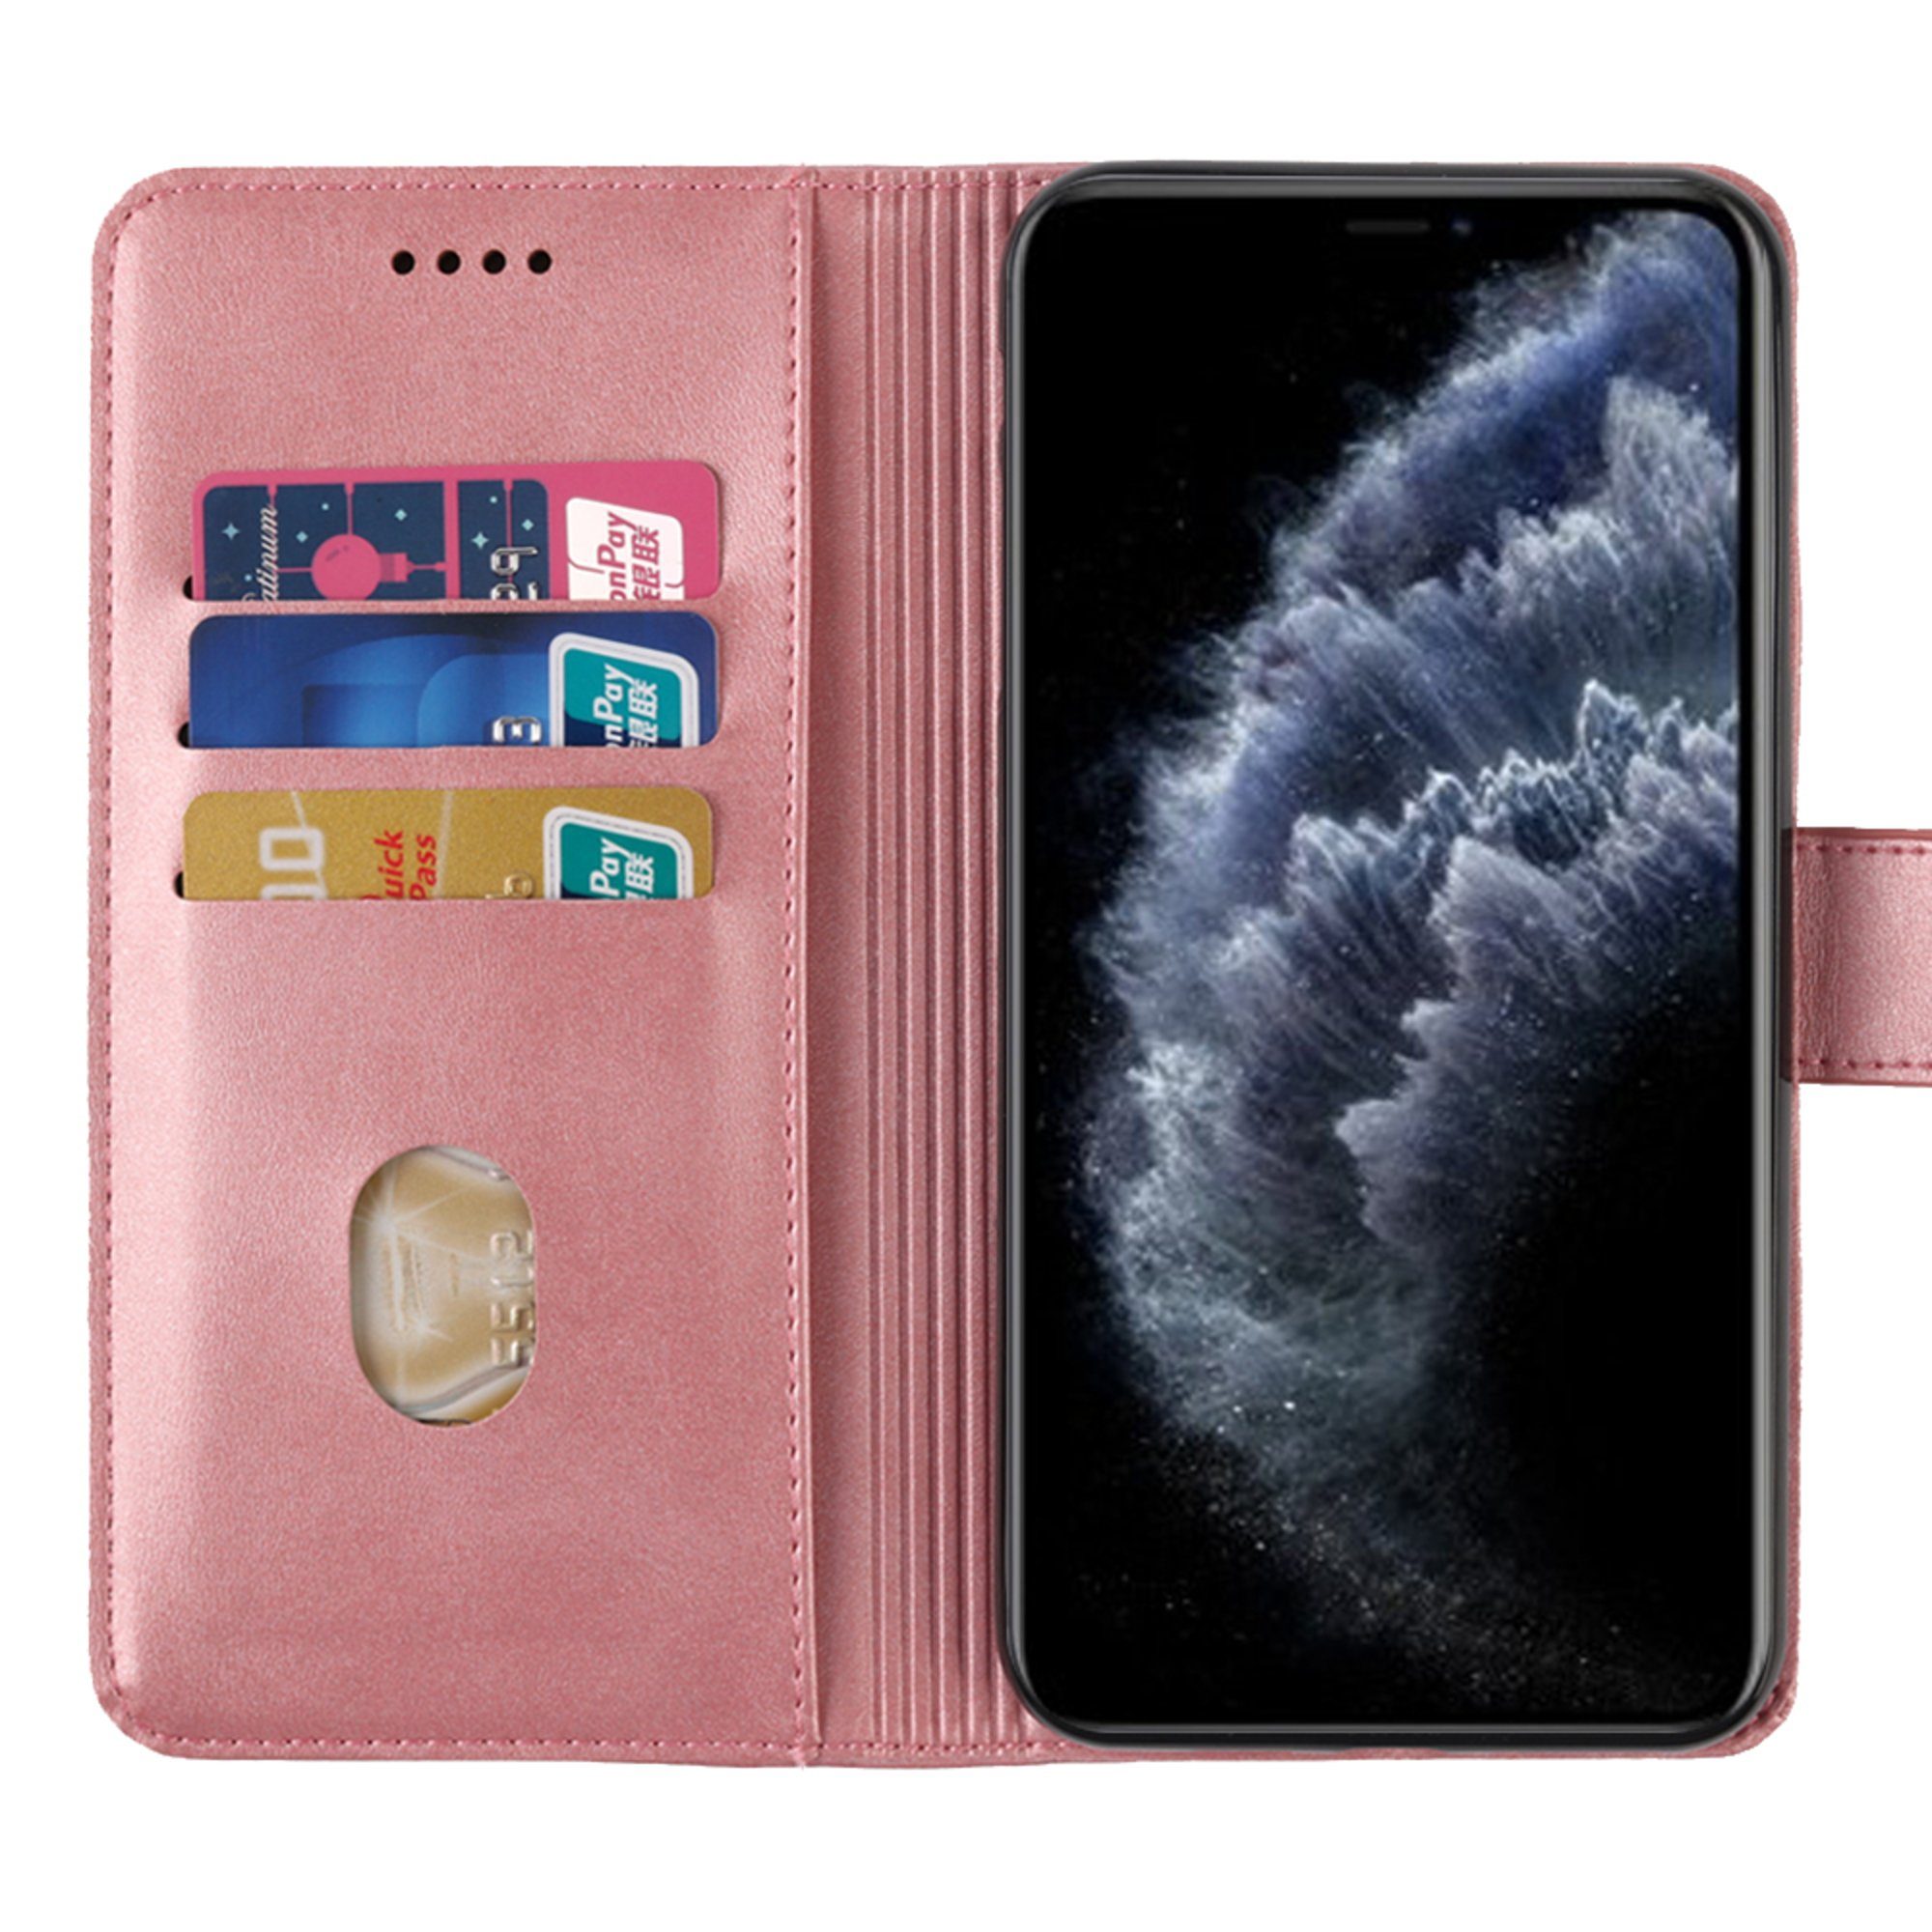 H-basics Handyhülle »Handyhülle für Samsung Galaxy A6 2018 hülle case cover  - Kartenfach, Stand Funktion, und sichtbar Magnetverschluss« online kaufen  | OTTO